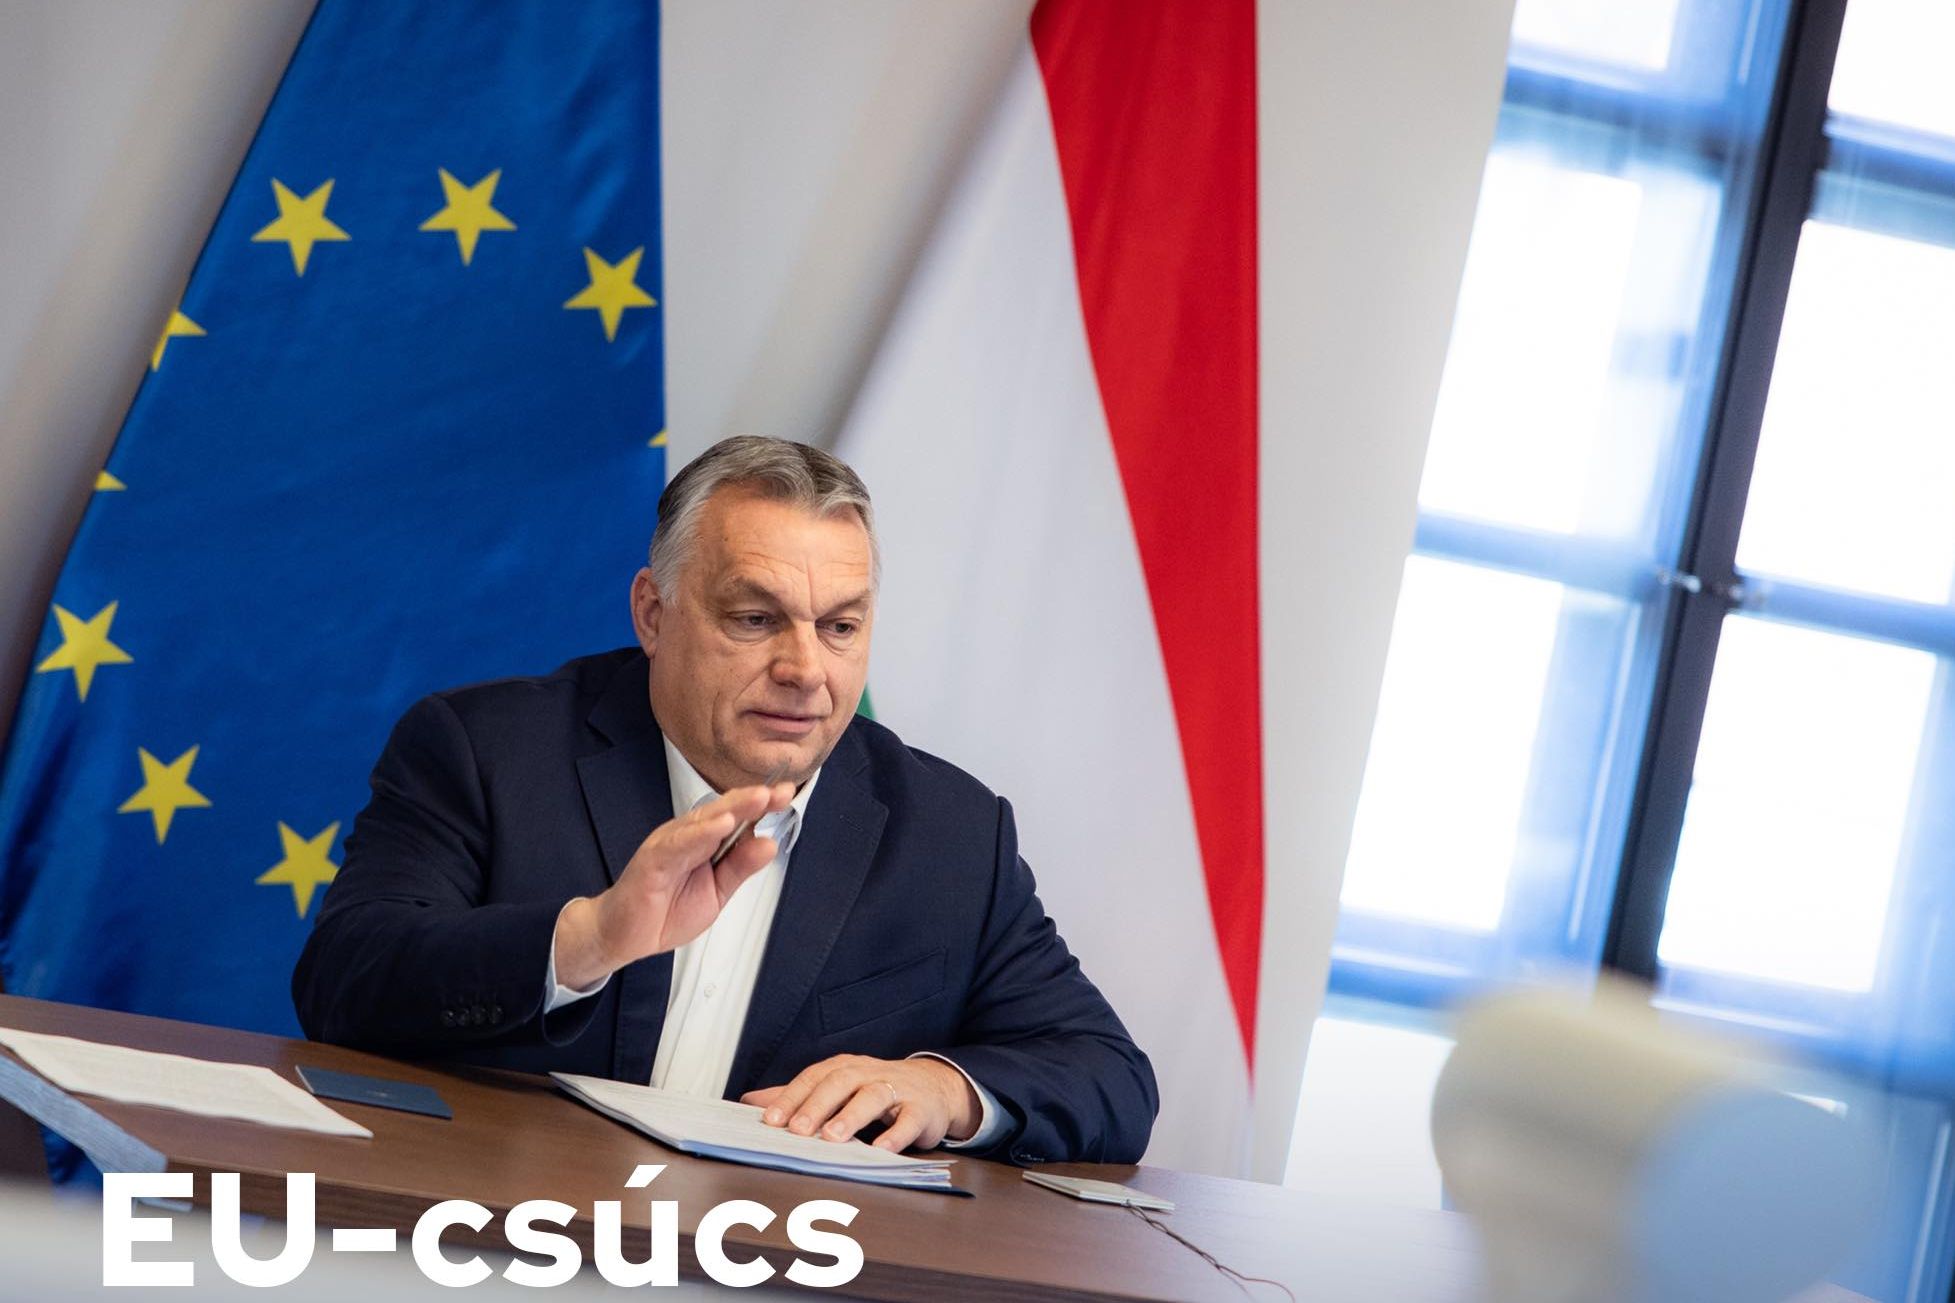 EU-csúcs előtt: újabb feltételeket szab az Orbán-kormány az olajembargó kapcsán